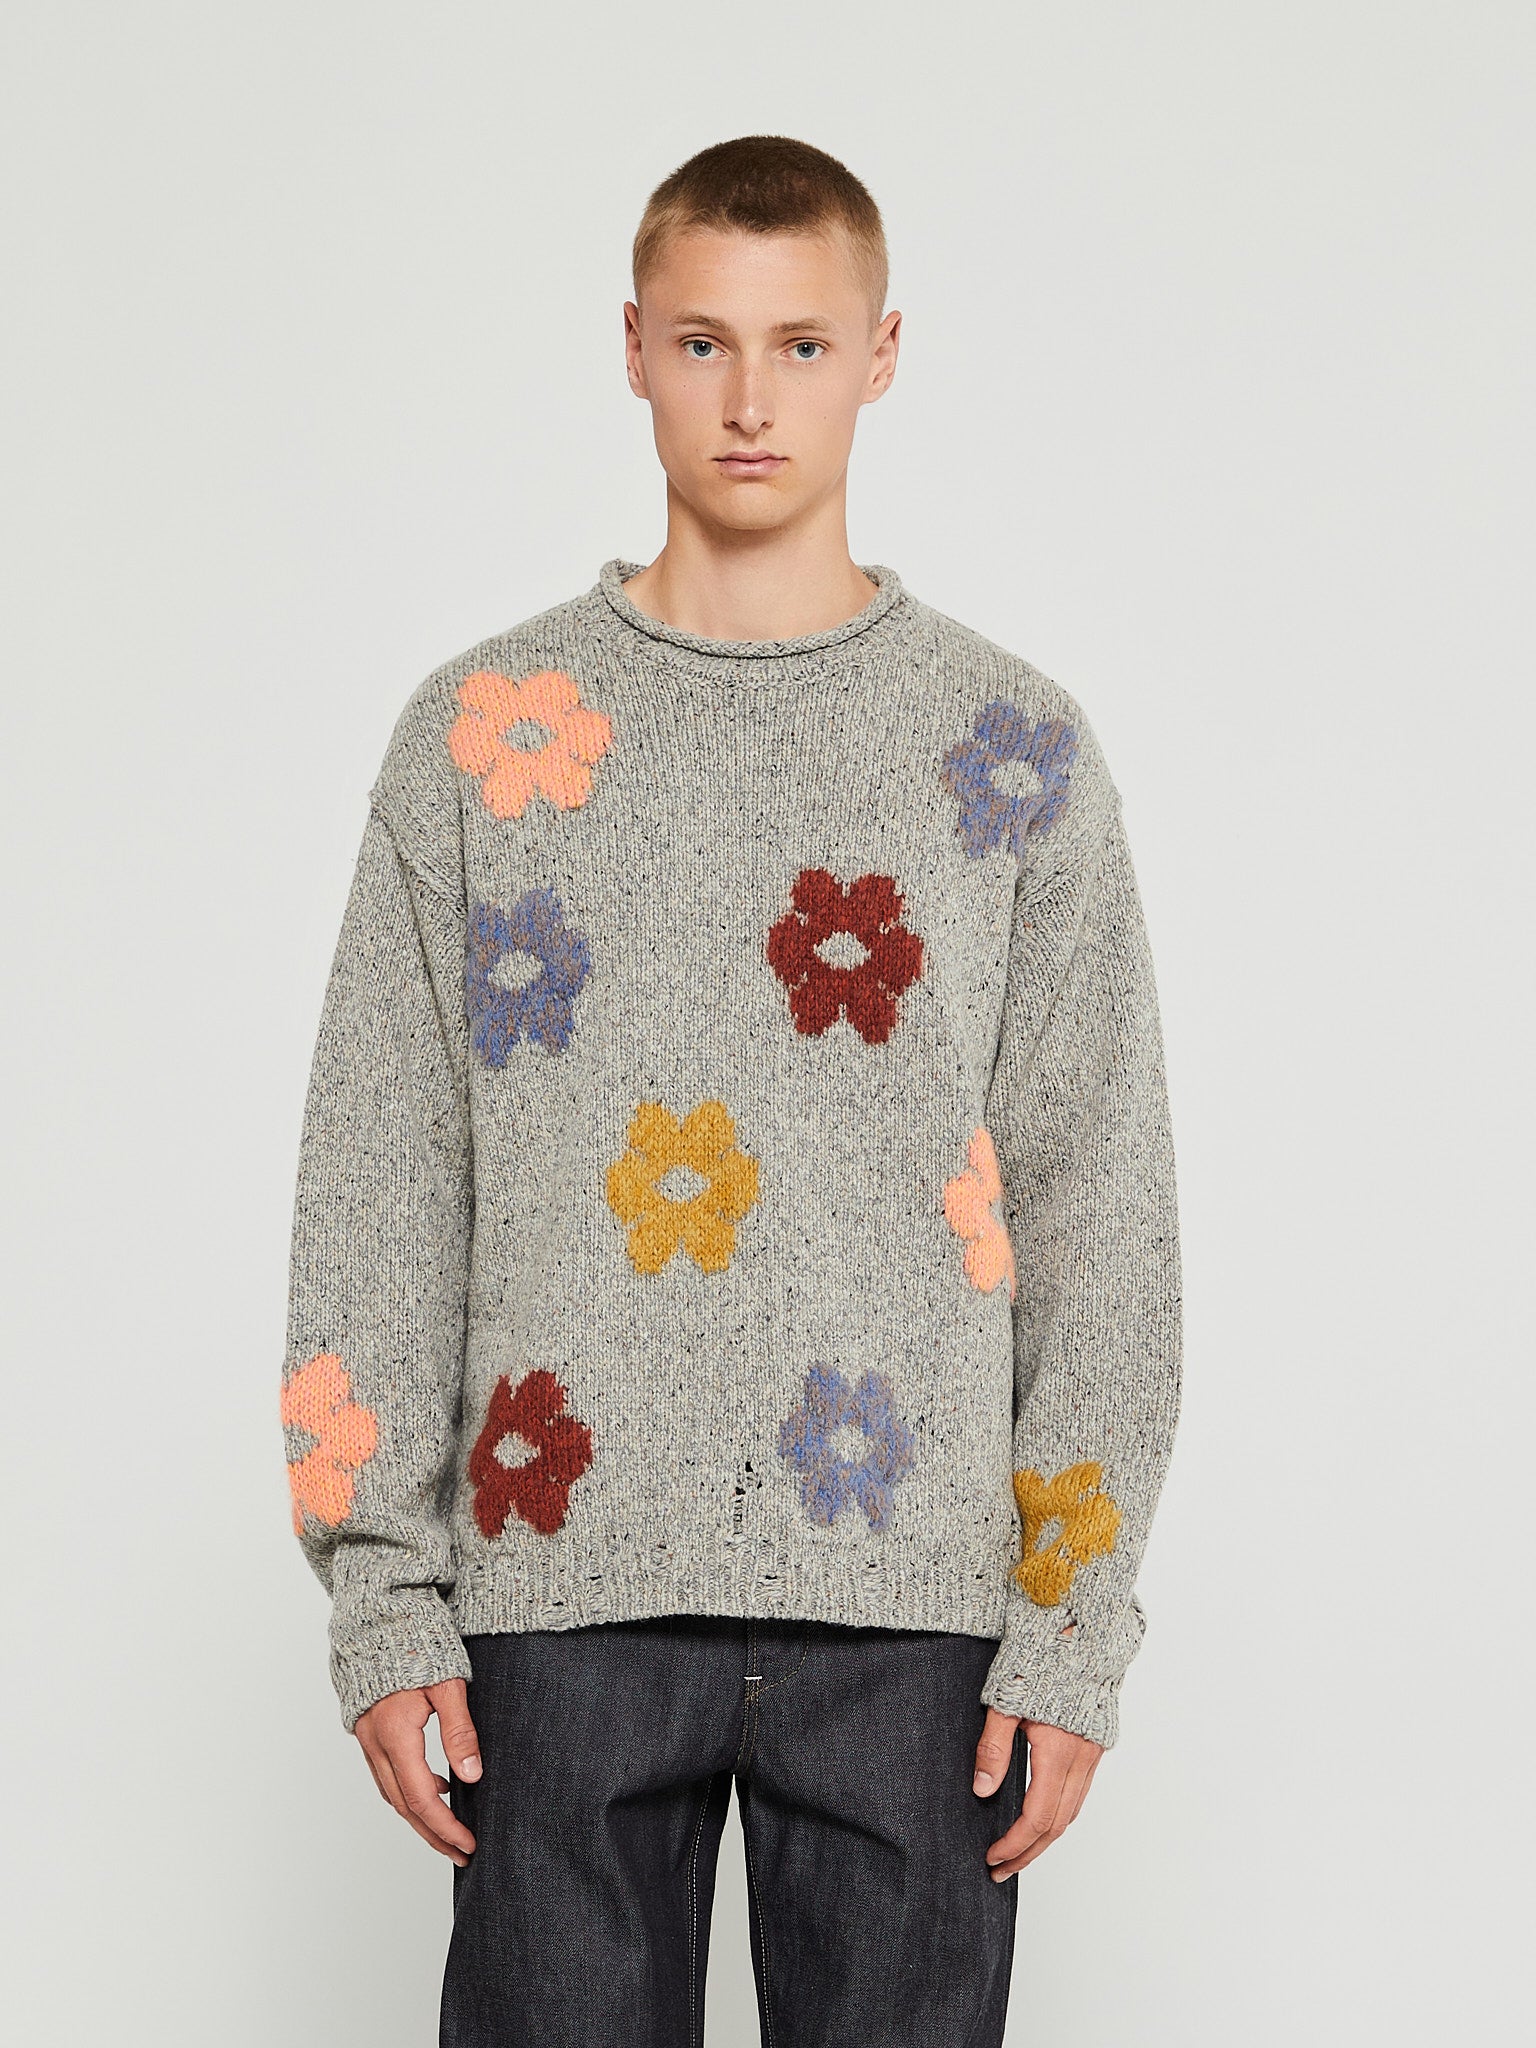 Acne Studios - Floral Wool Knit in Grey Melange